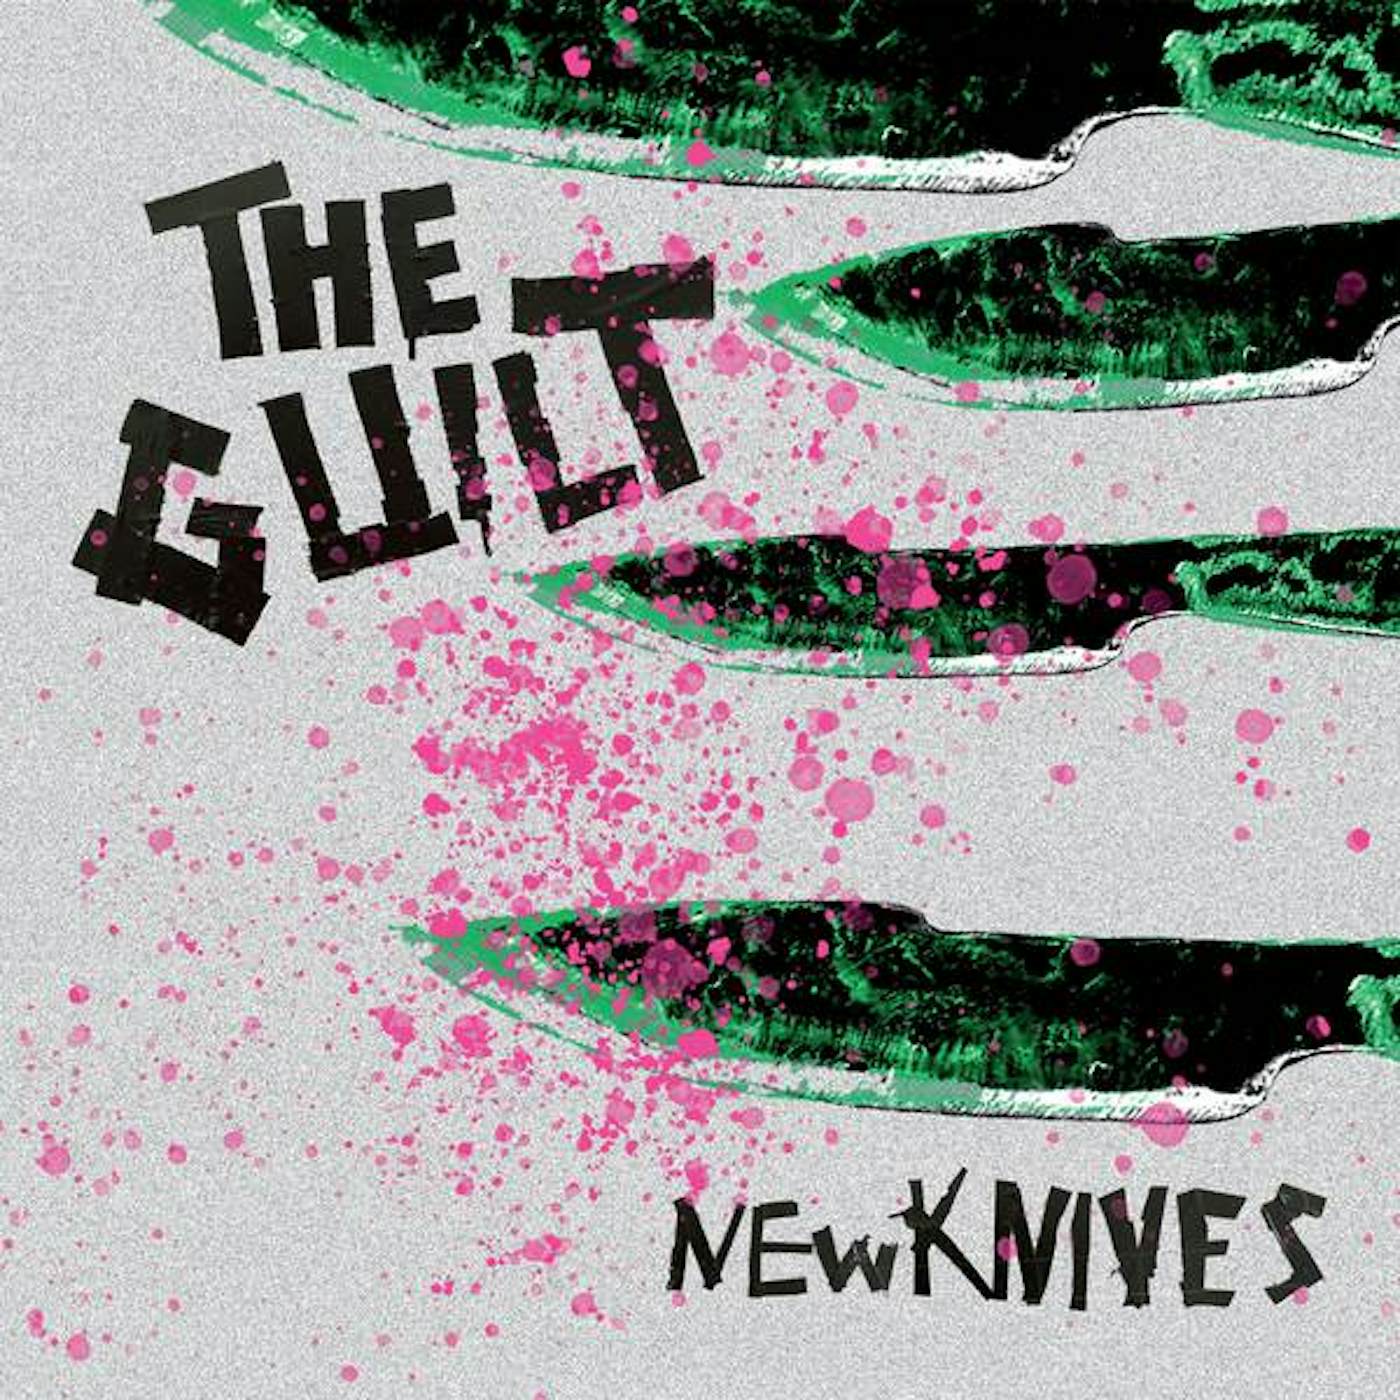 Guilt New Knives Vinyl Record